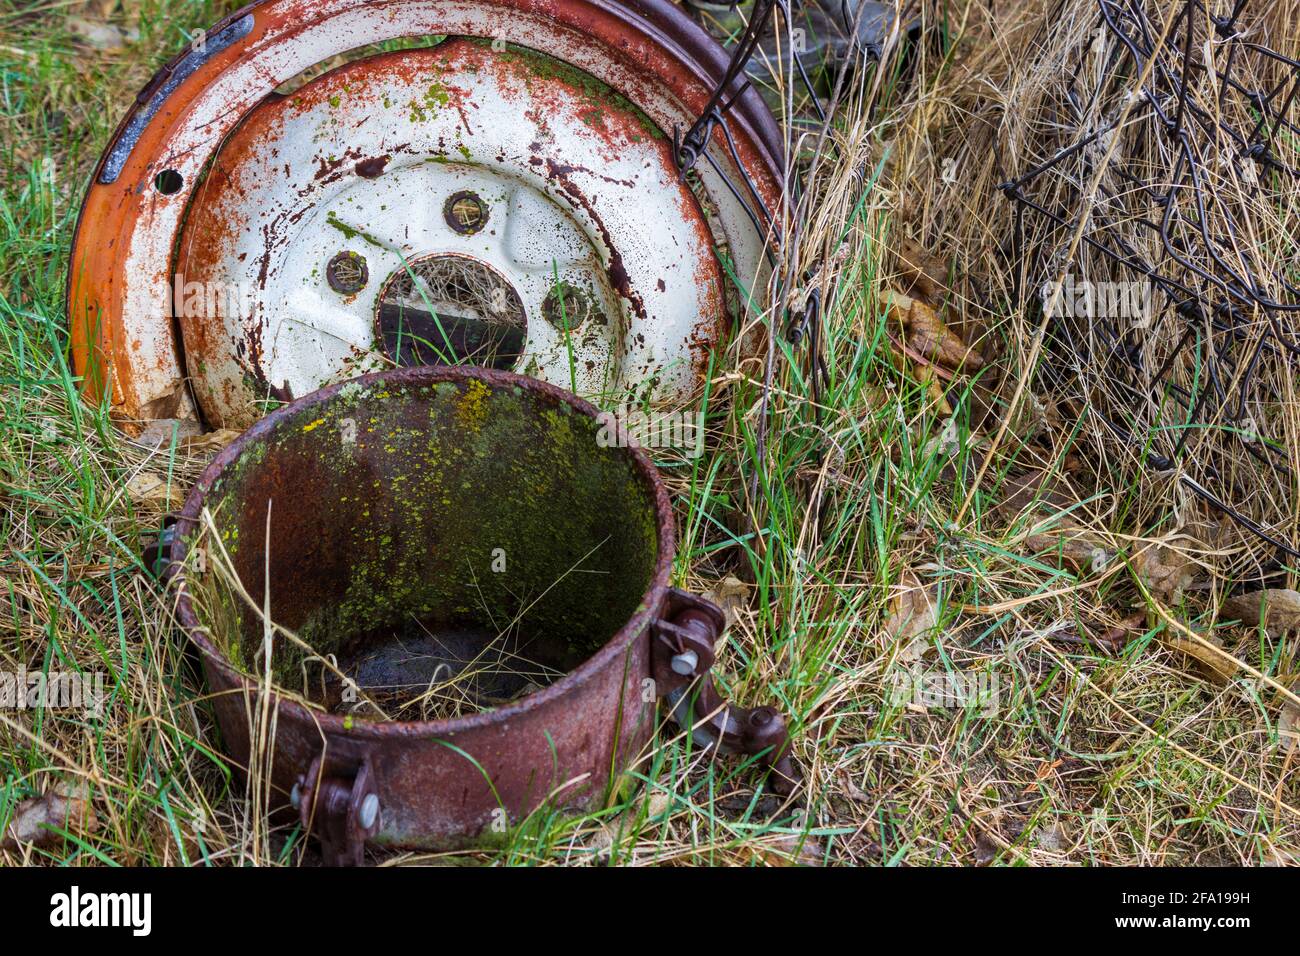 Le réservoir d'un pulvérisateur de peinture antique, une jante métallique et un rouleau de fil ancien dépassent de la pluie printanière humide herbe verte. Banque D'Images